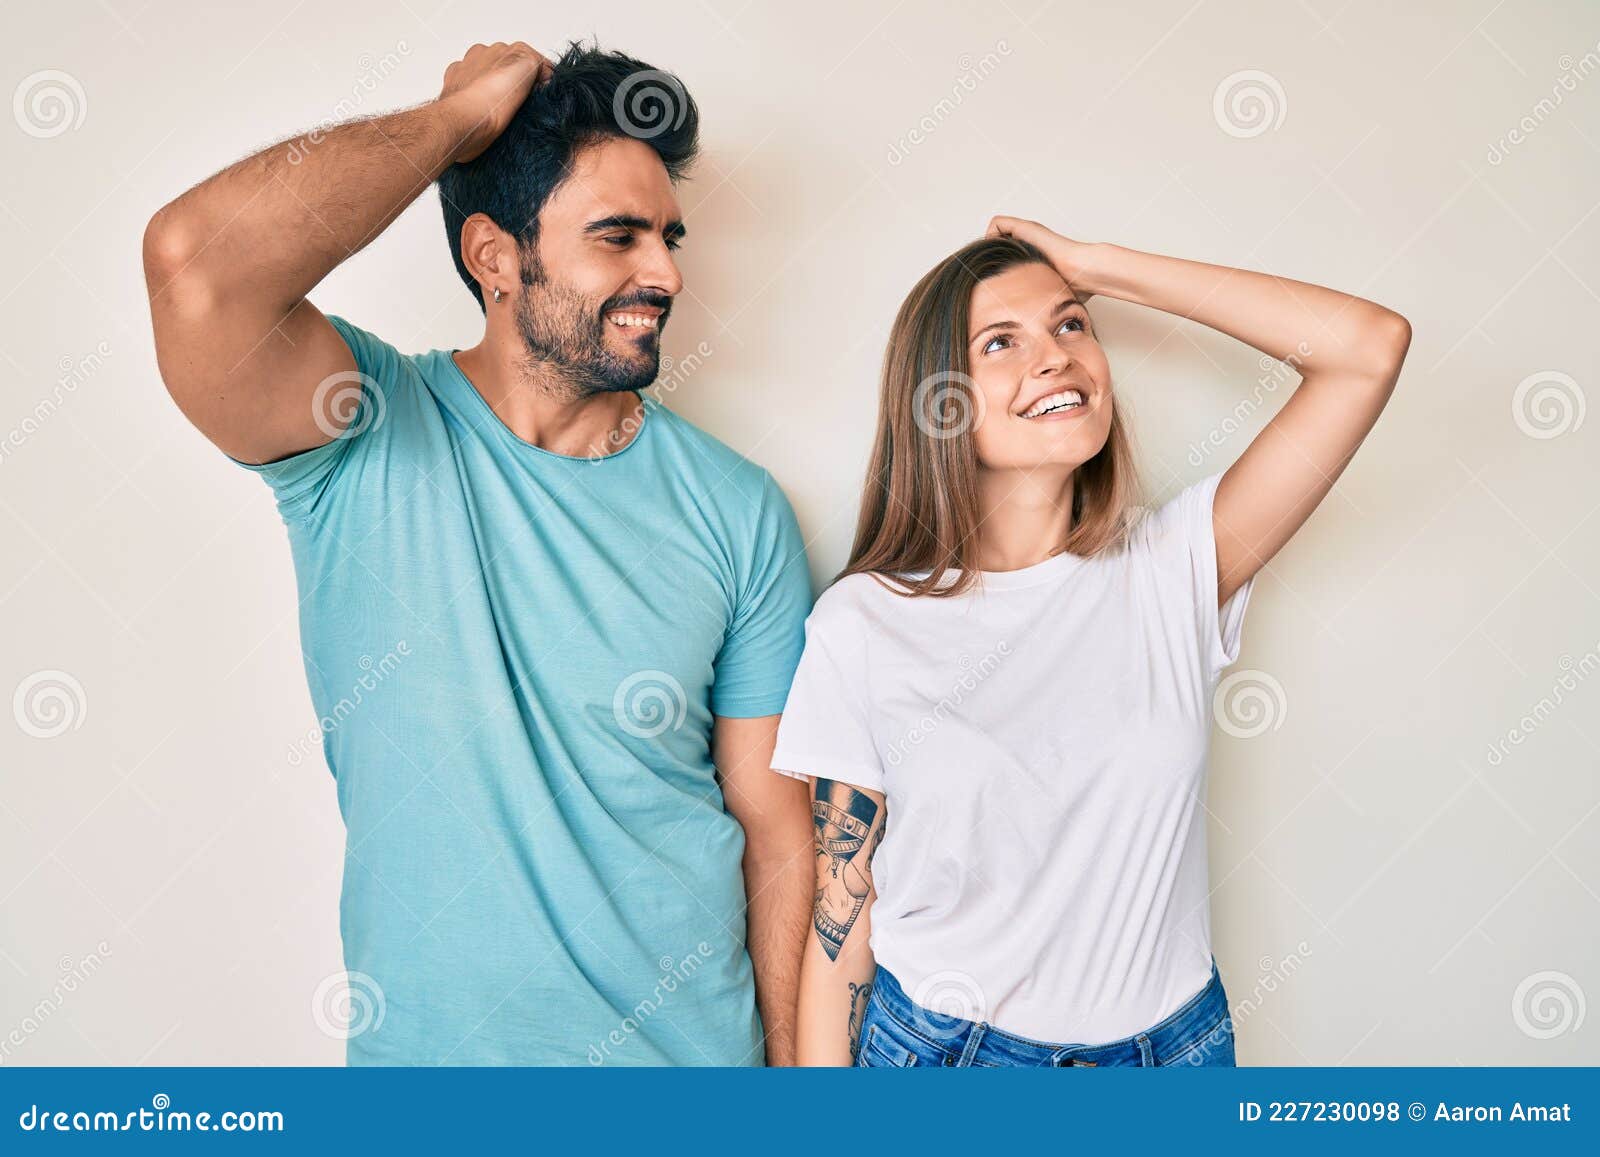 boyfriend while girlfriend pose｜TikTok Search